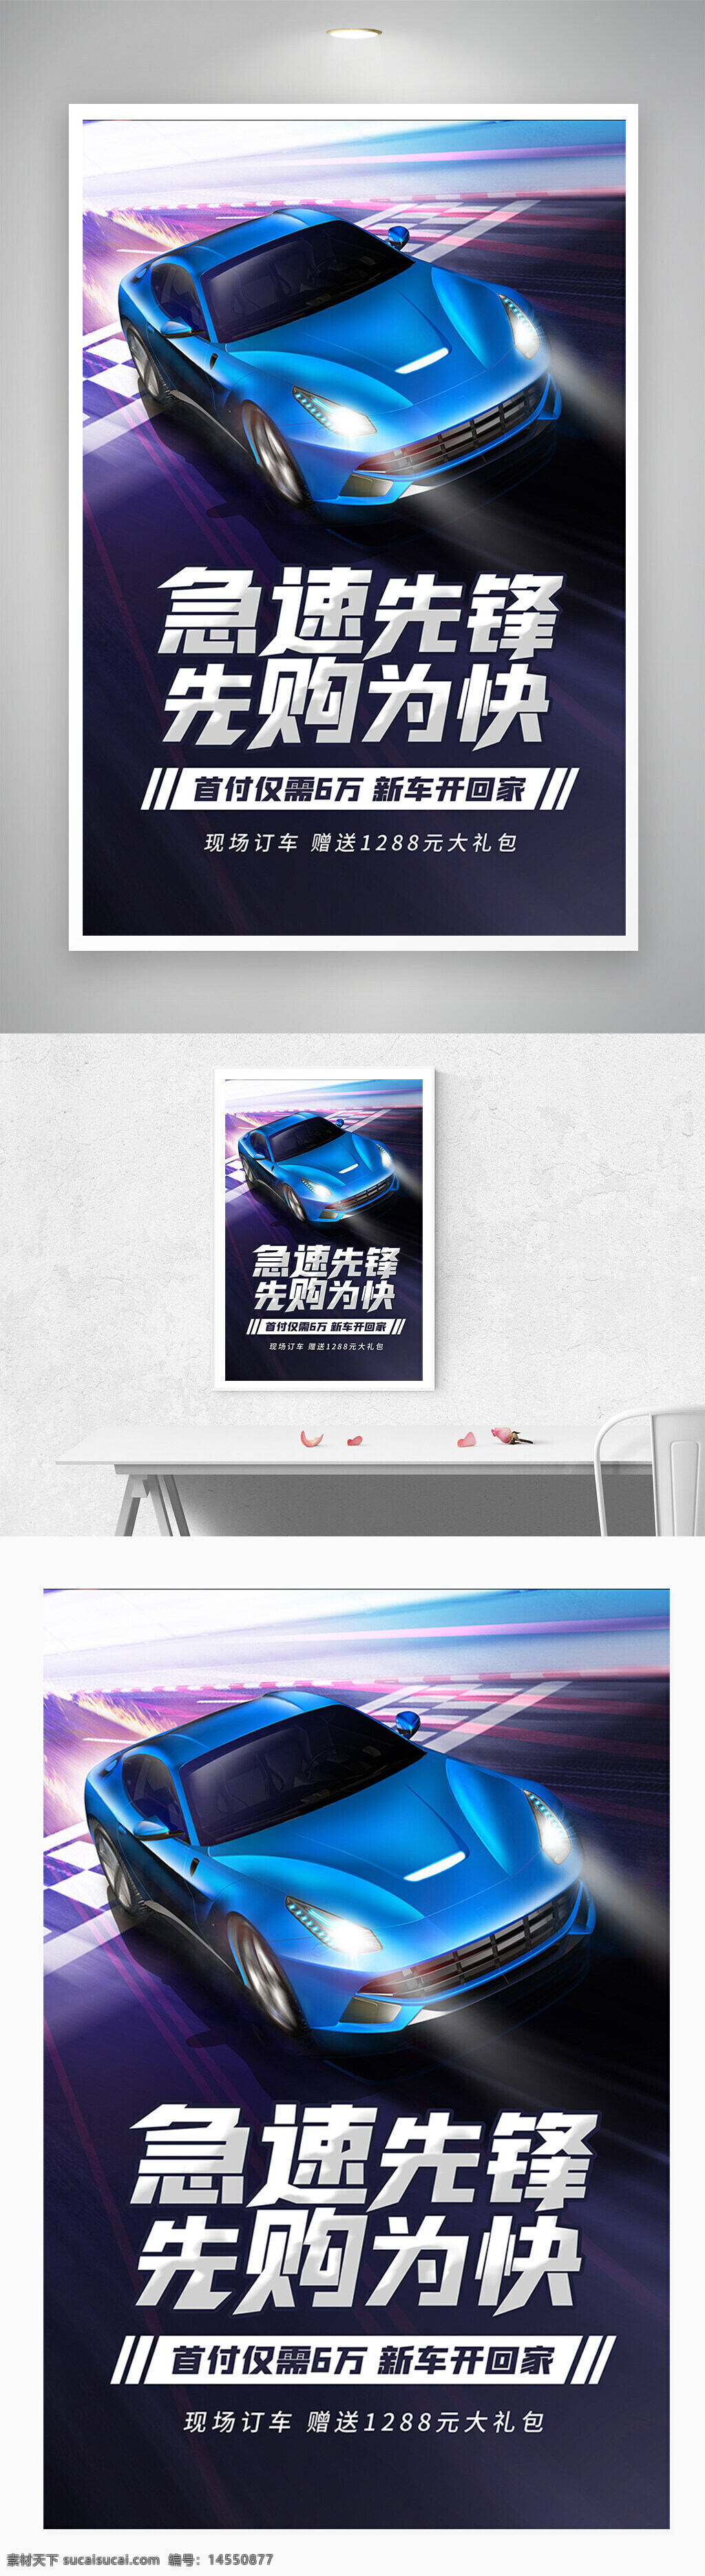 炫酷 车展 购车 优惠 促销 汽车 海报